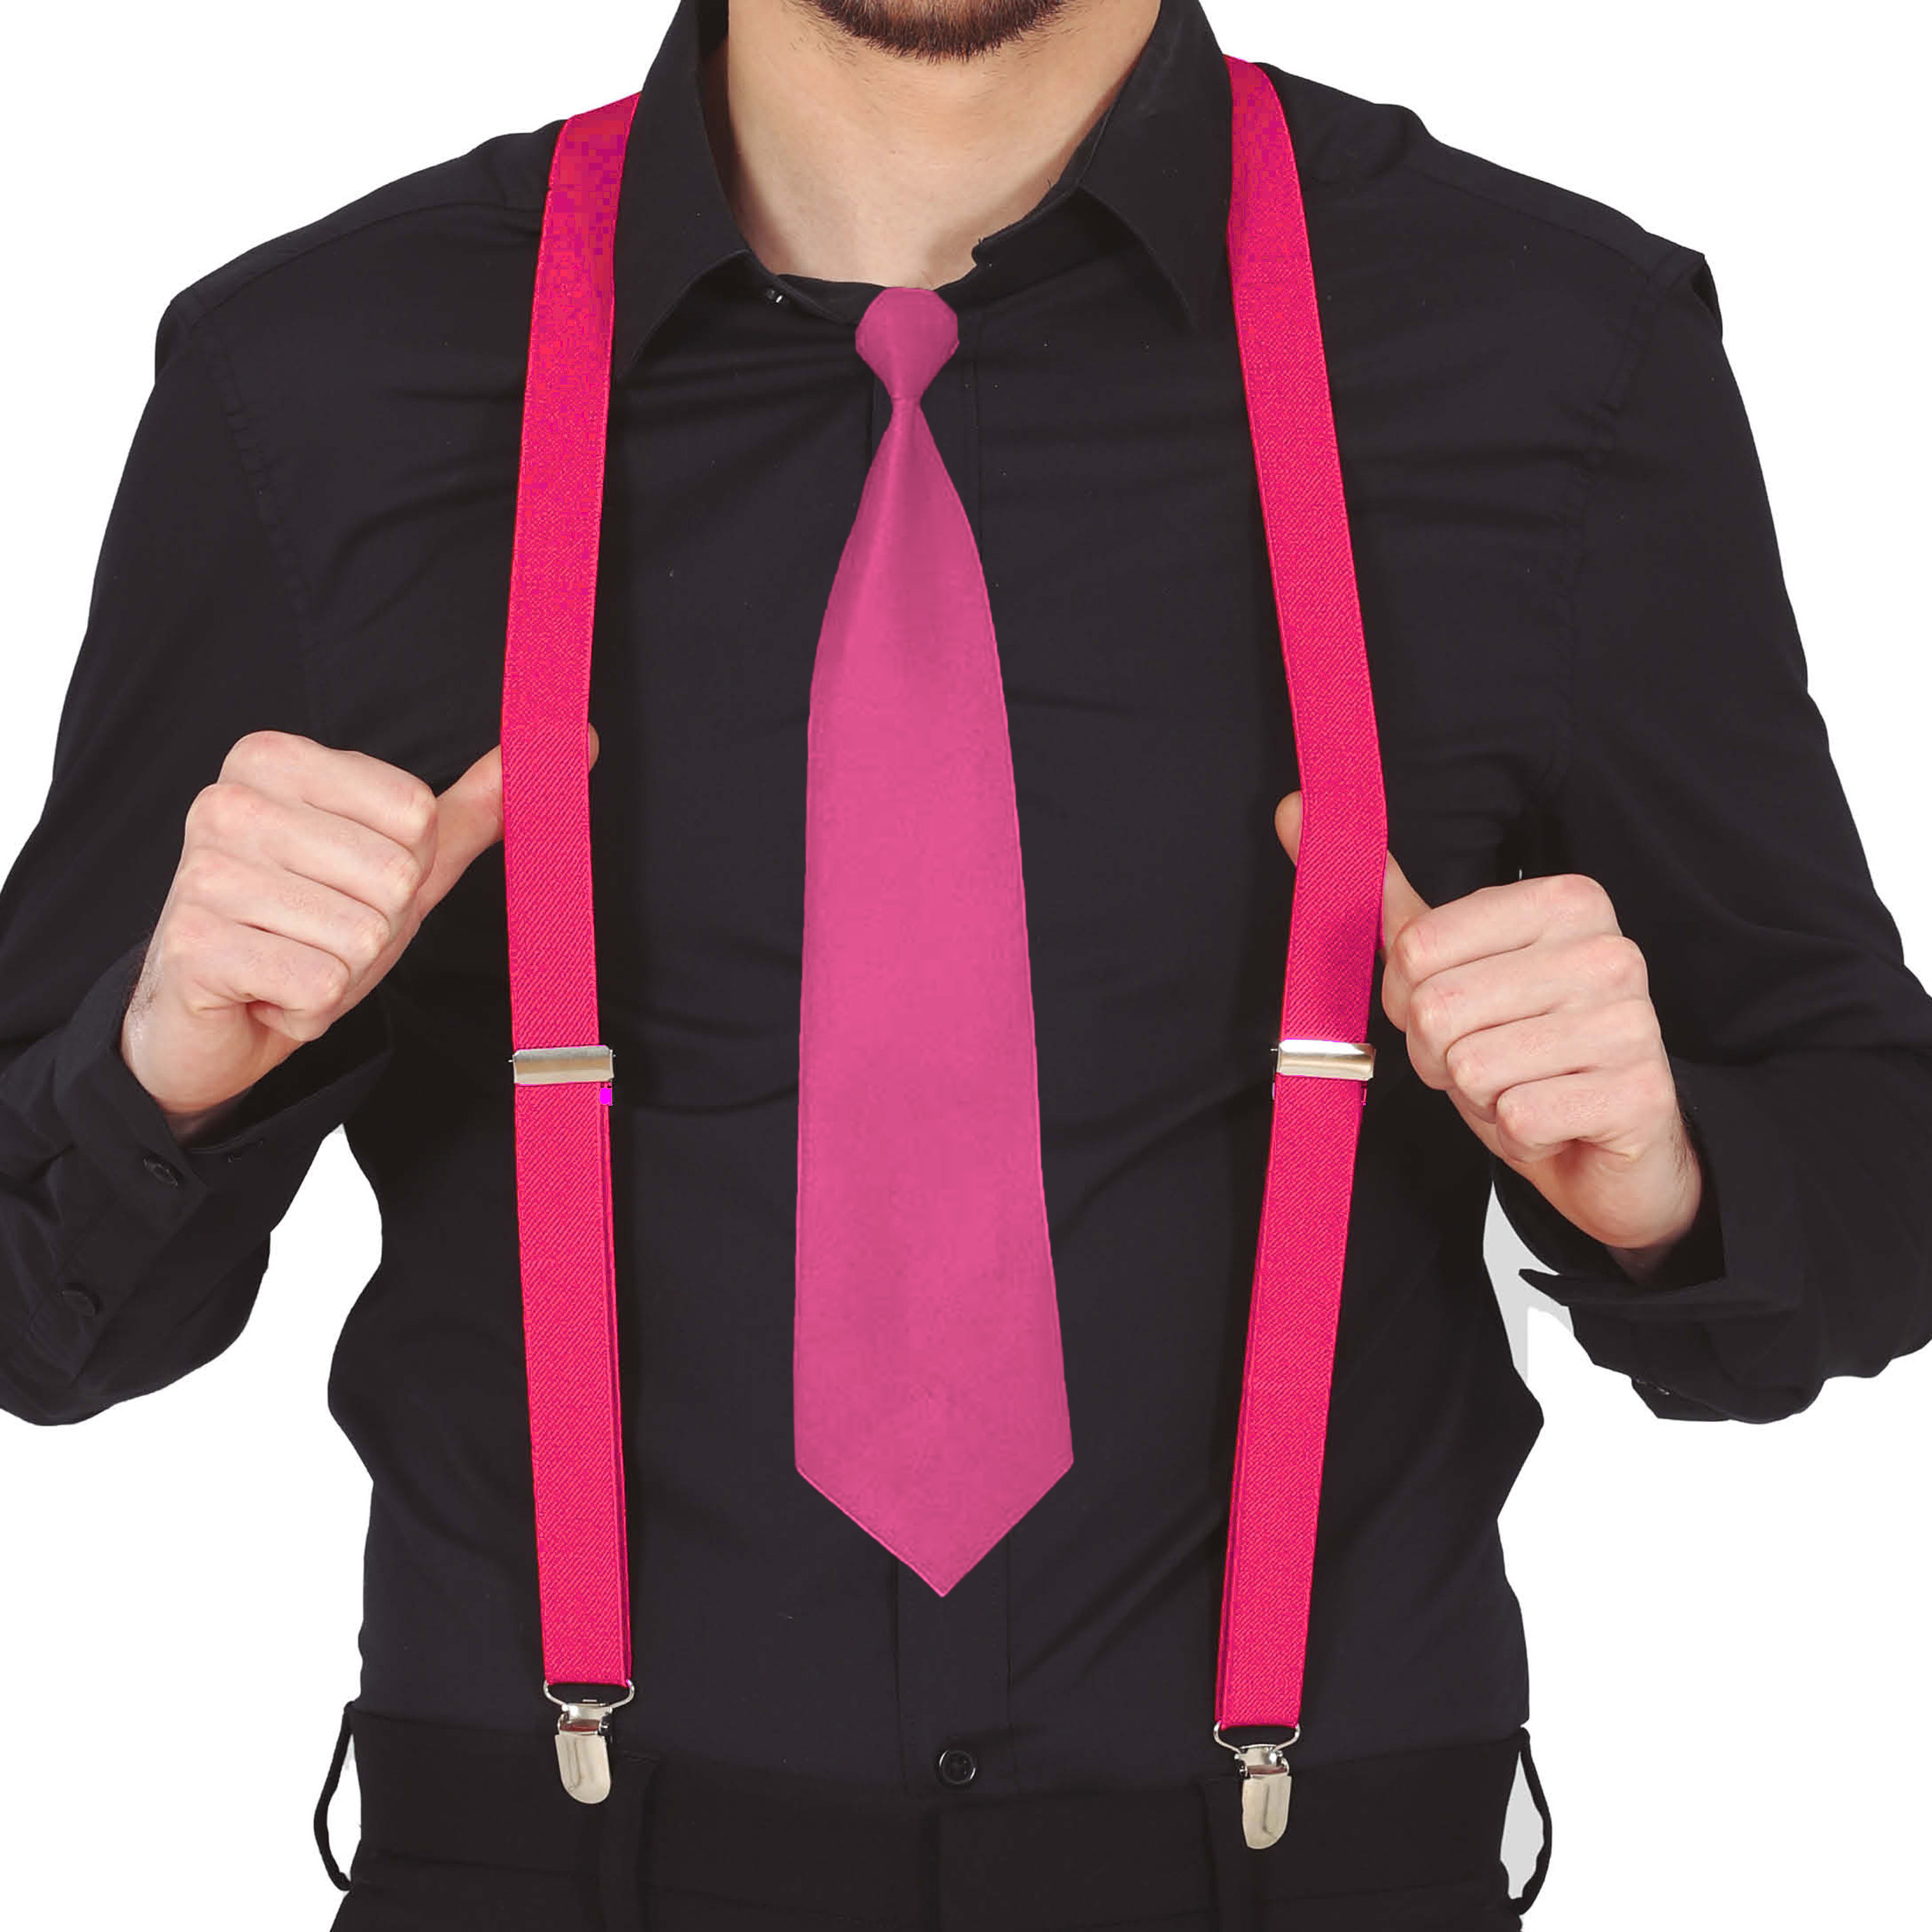 Carnaval verkleed bretels en stropdas fuchsia roze volwassenen verkleed accessoires